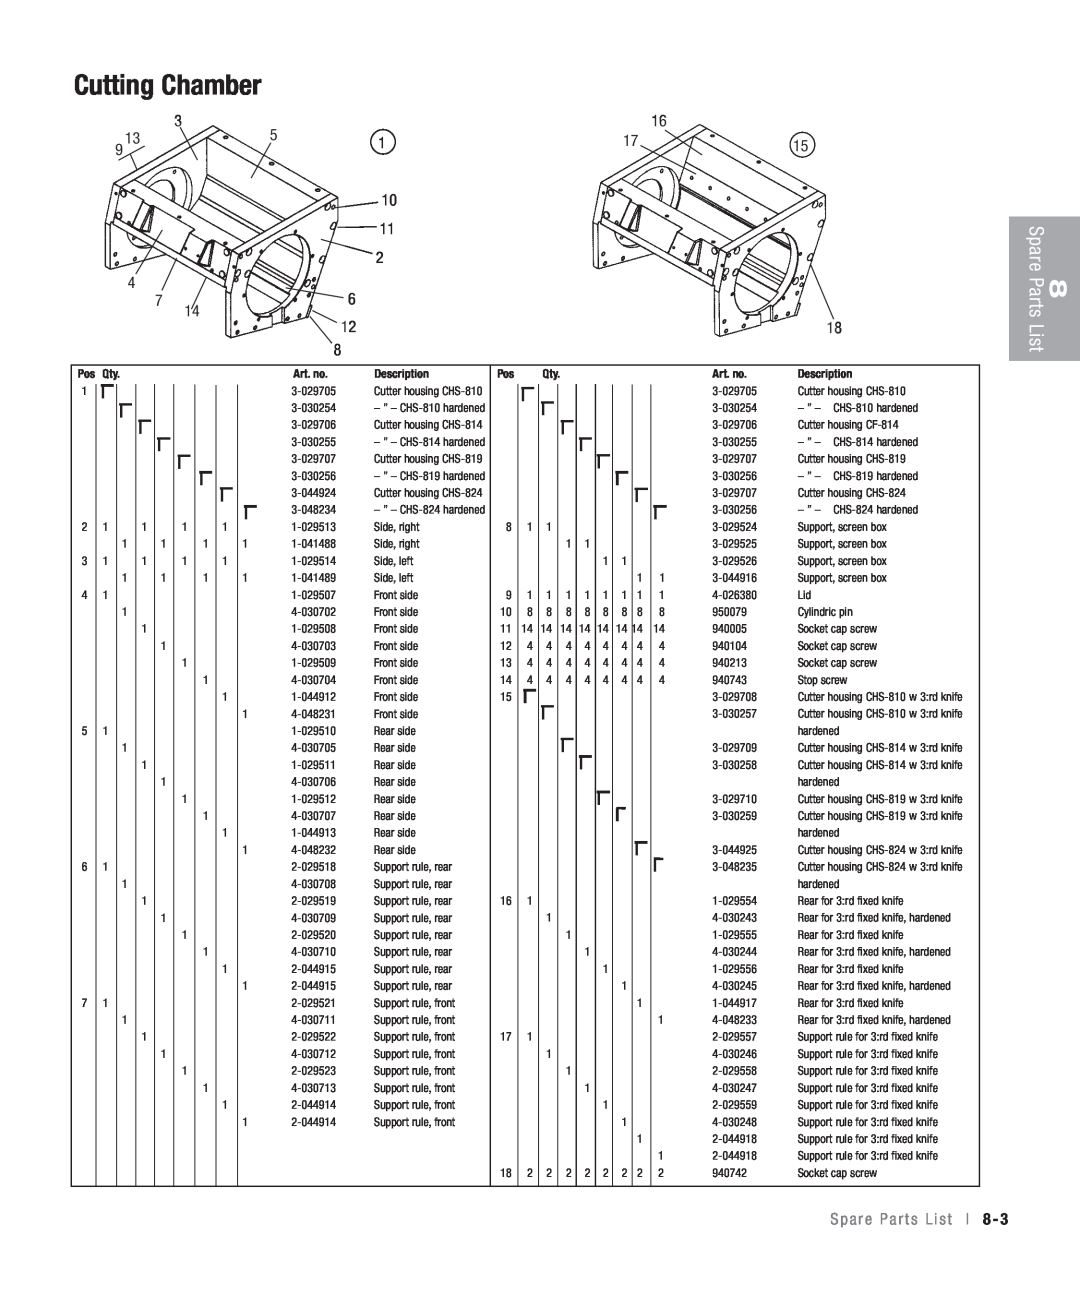 Conair CHS-810 manual Cutting Chamber, Spare Parts, List, S p a r e P a r t s L i s t l 8, Art. no, Description 